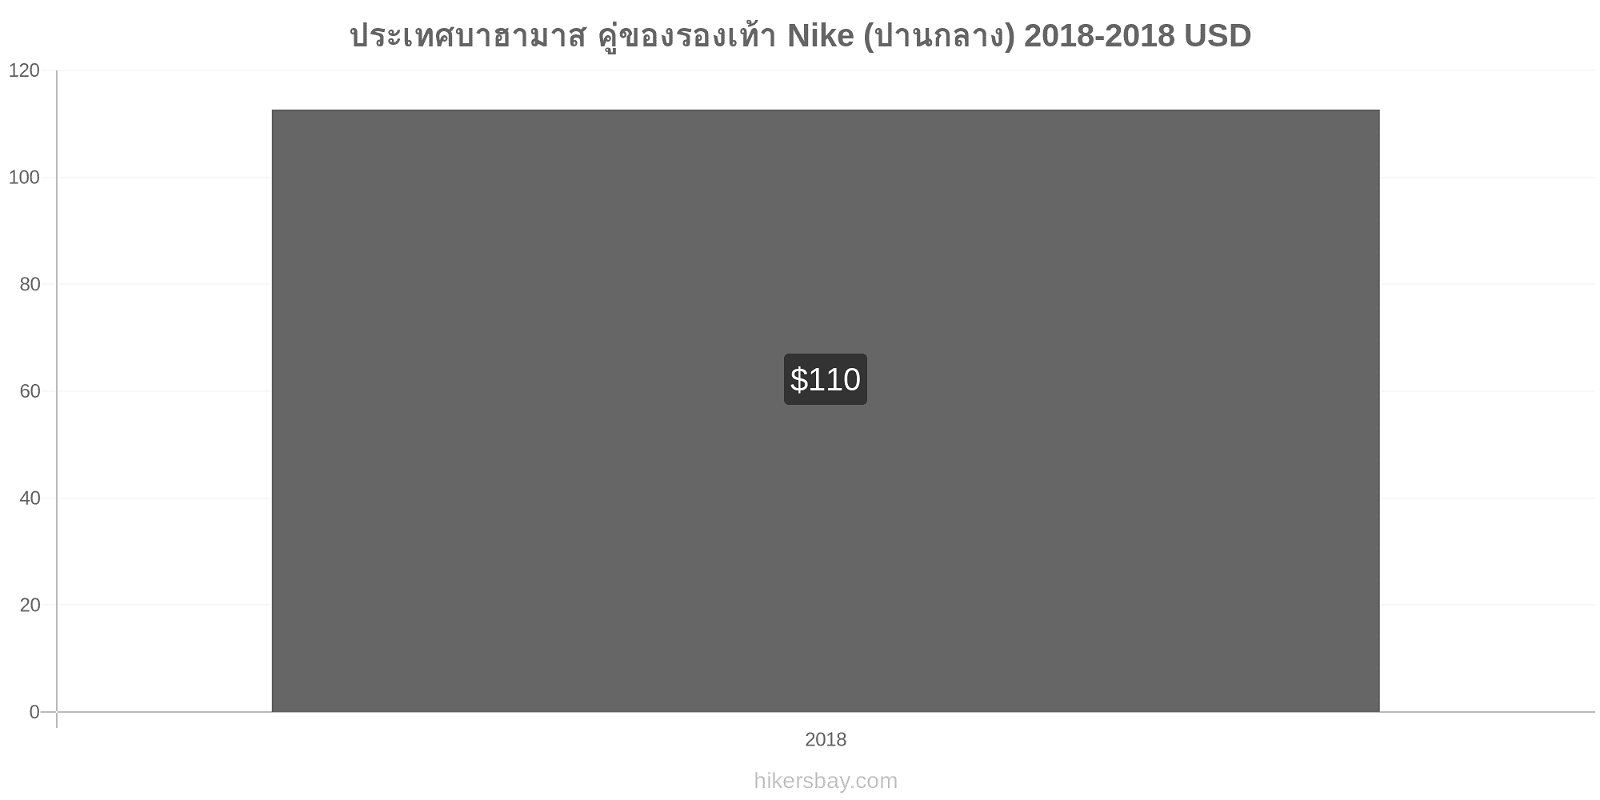 ประเทศบาฮามาส การเปลี่ยนแปลงราคา คู่ของรองเท้า Nike (ปานกลาง) hikersbay.com